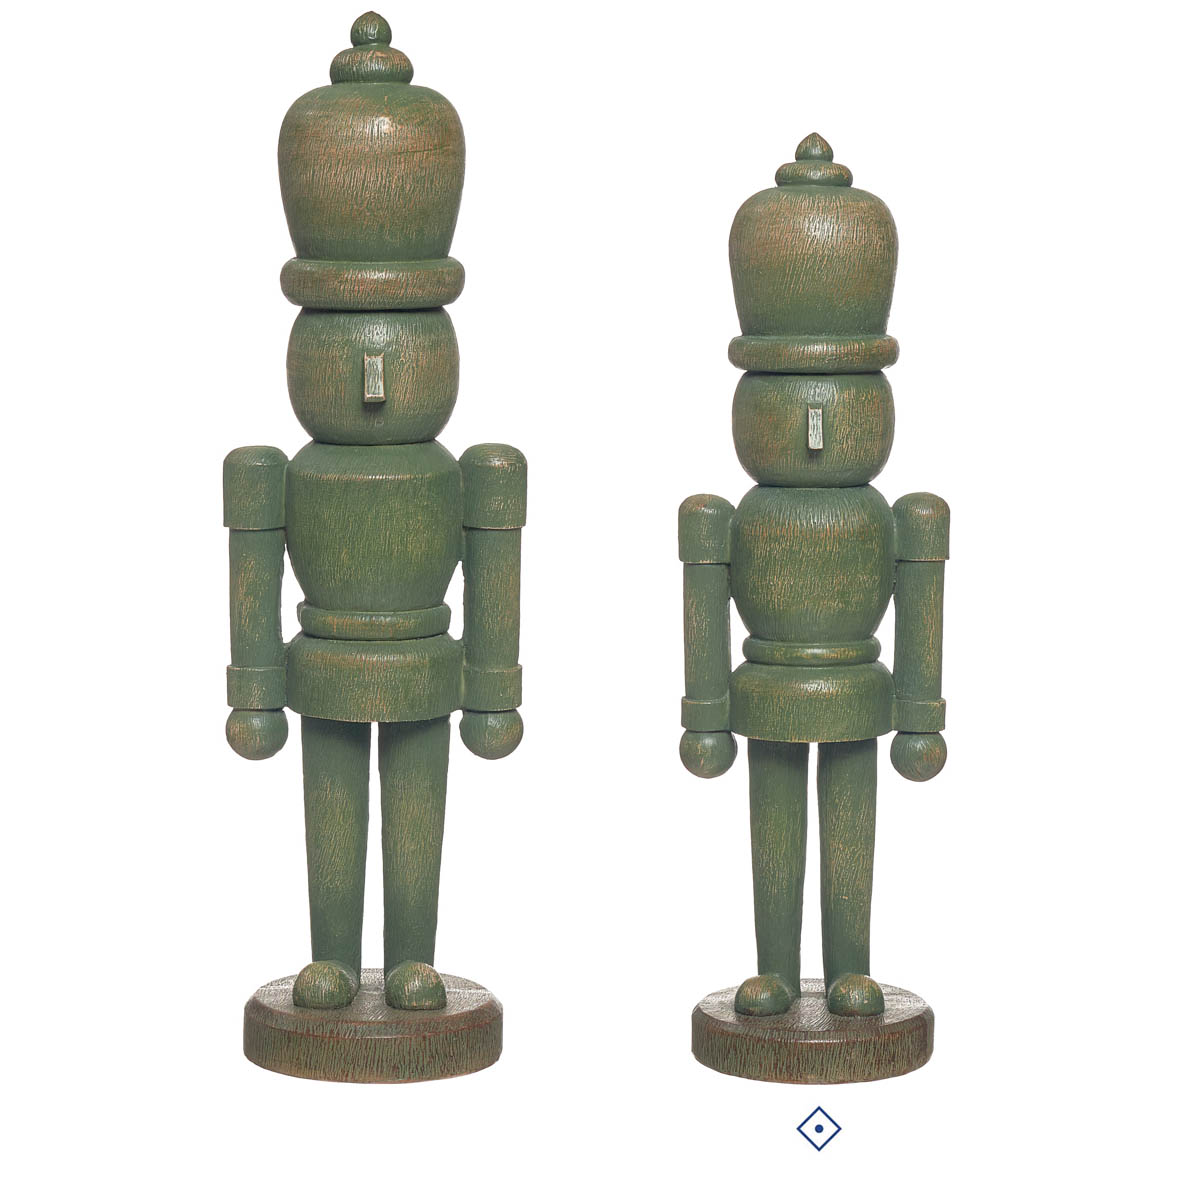 Joca Home Concept 34Cm Christmas Green Nutcracker Figurine